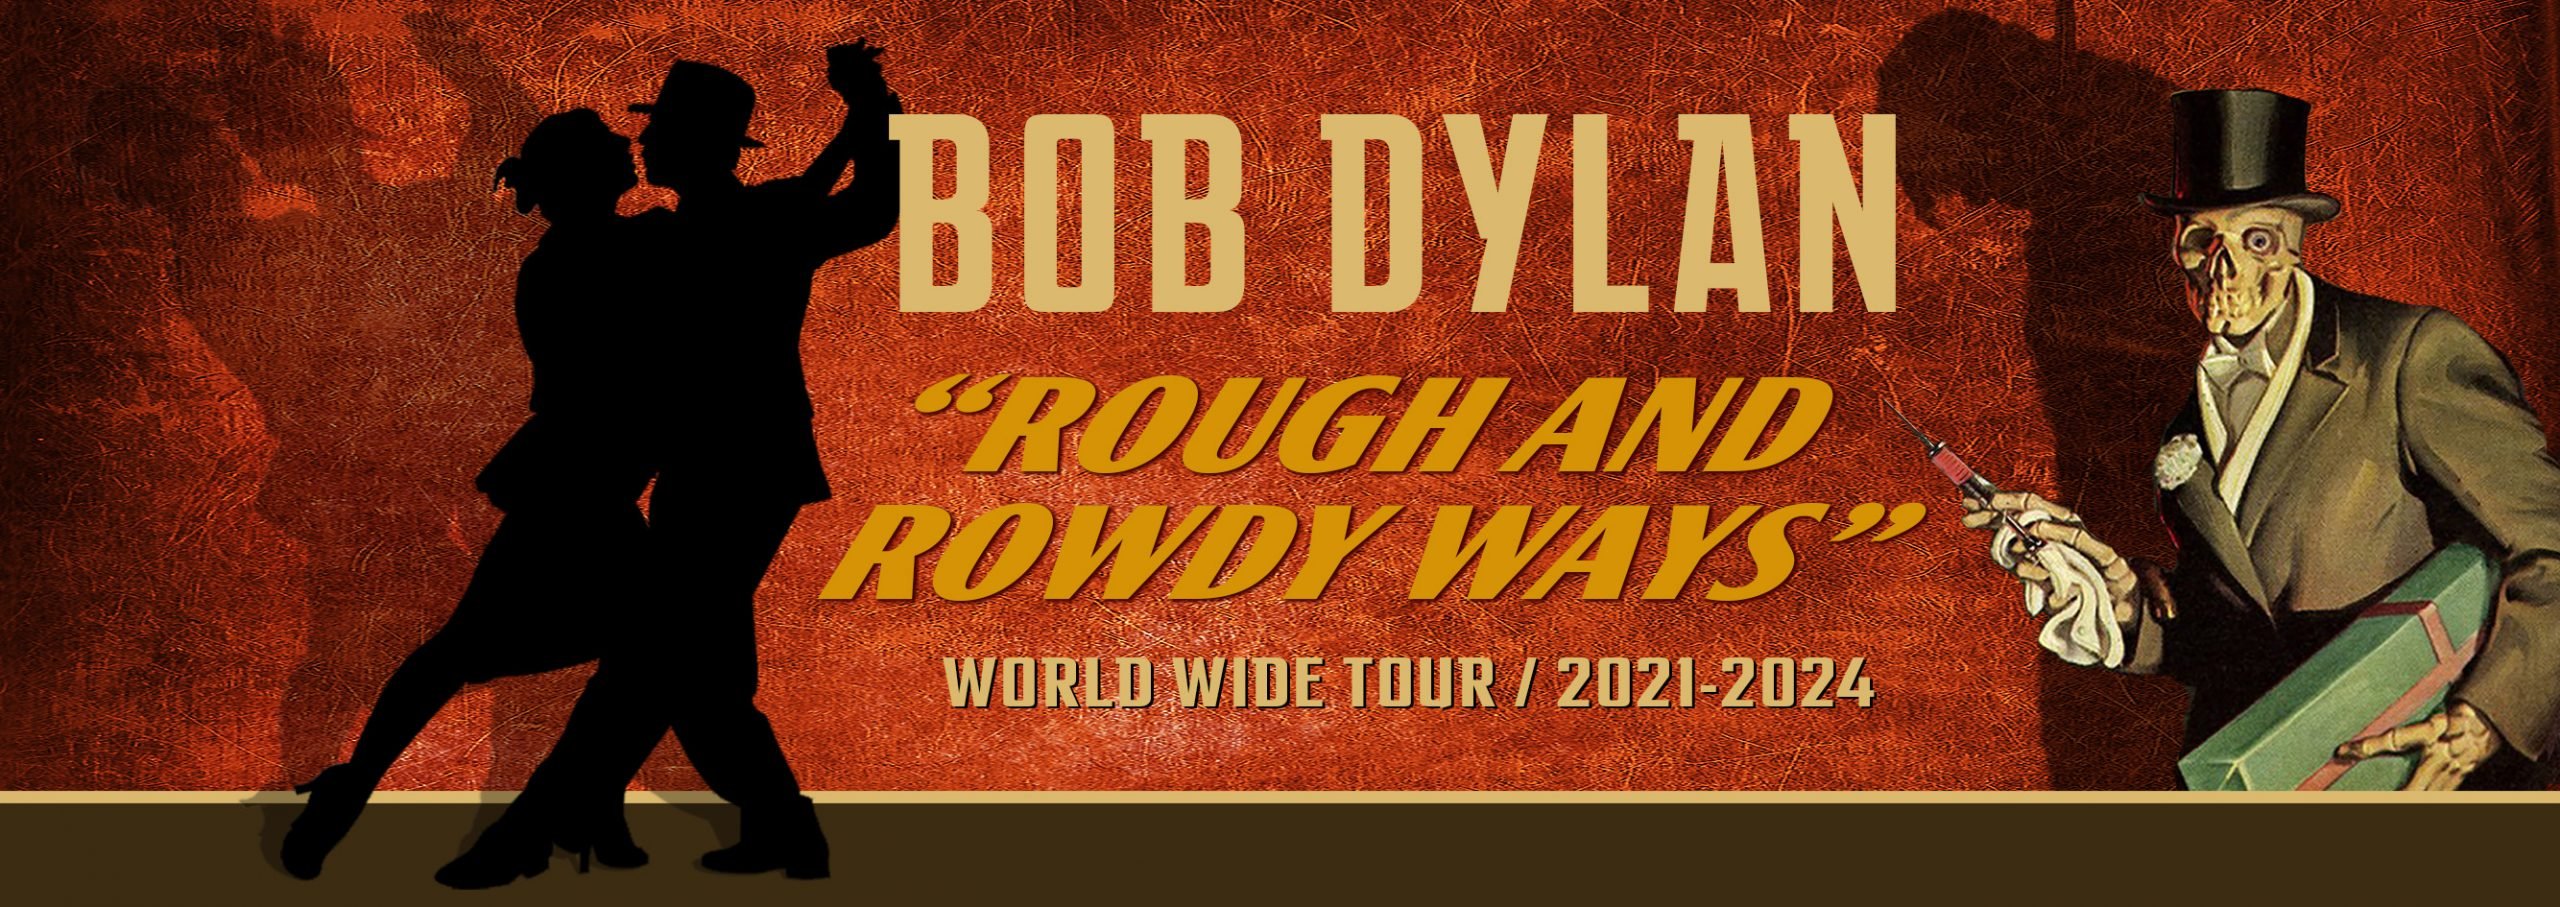 bob dylan tour 2022 dates